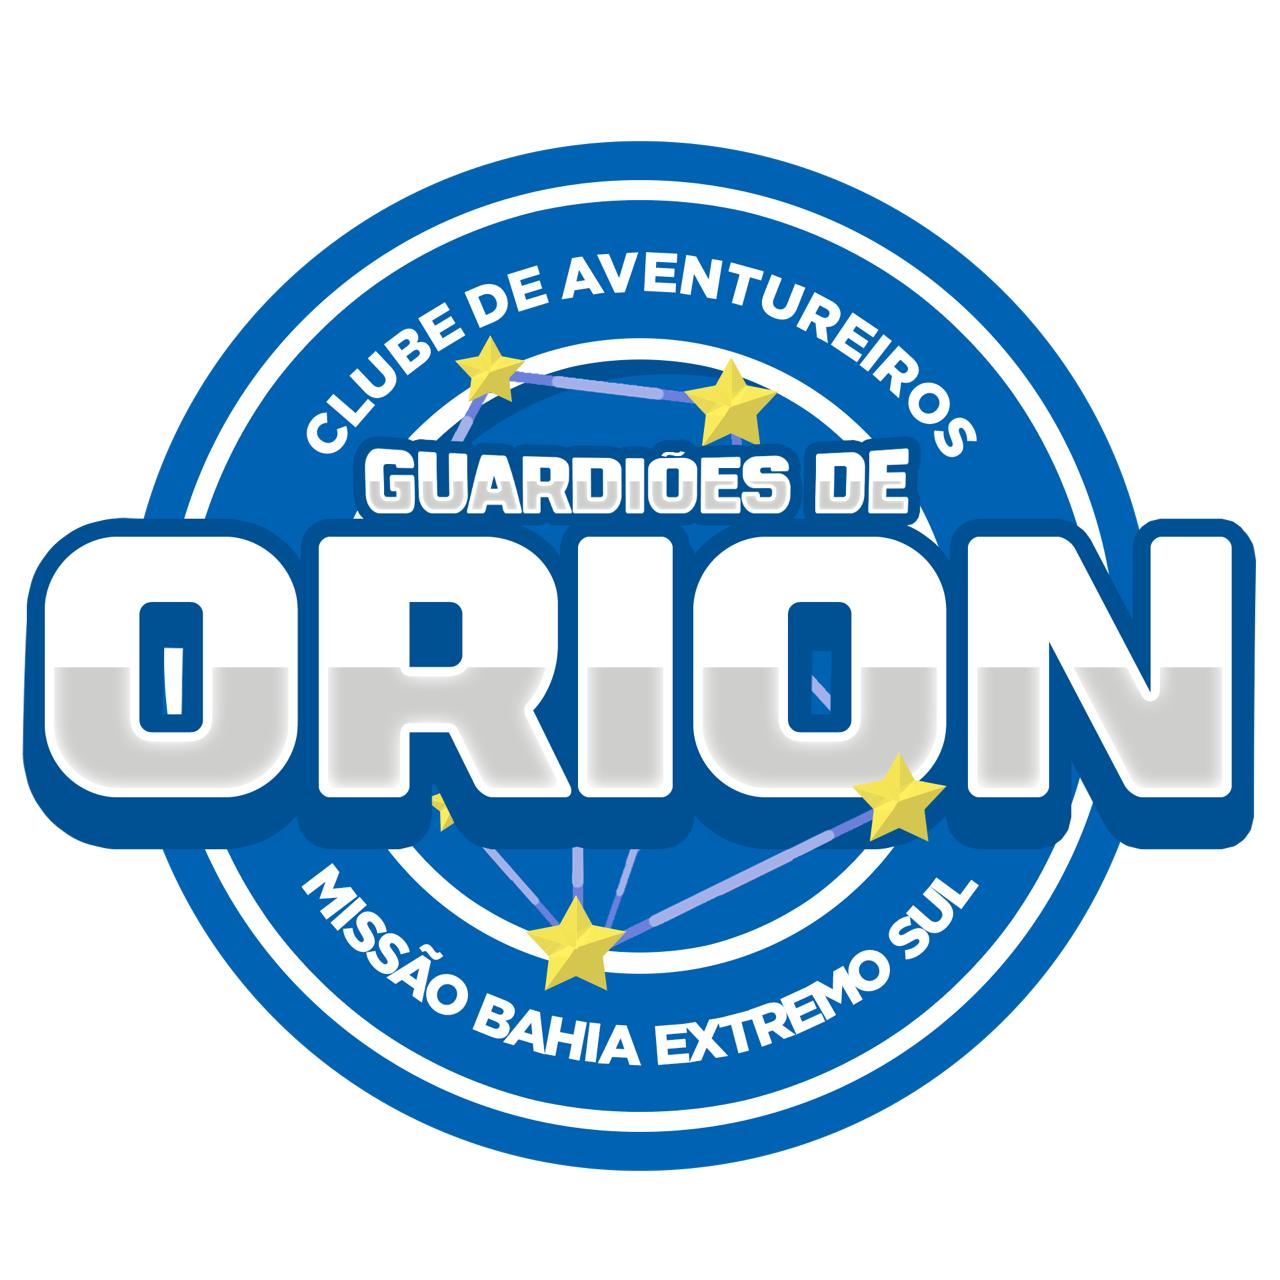 Guardiões de Orion